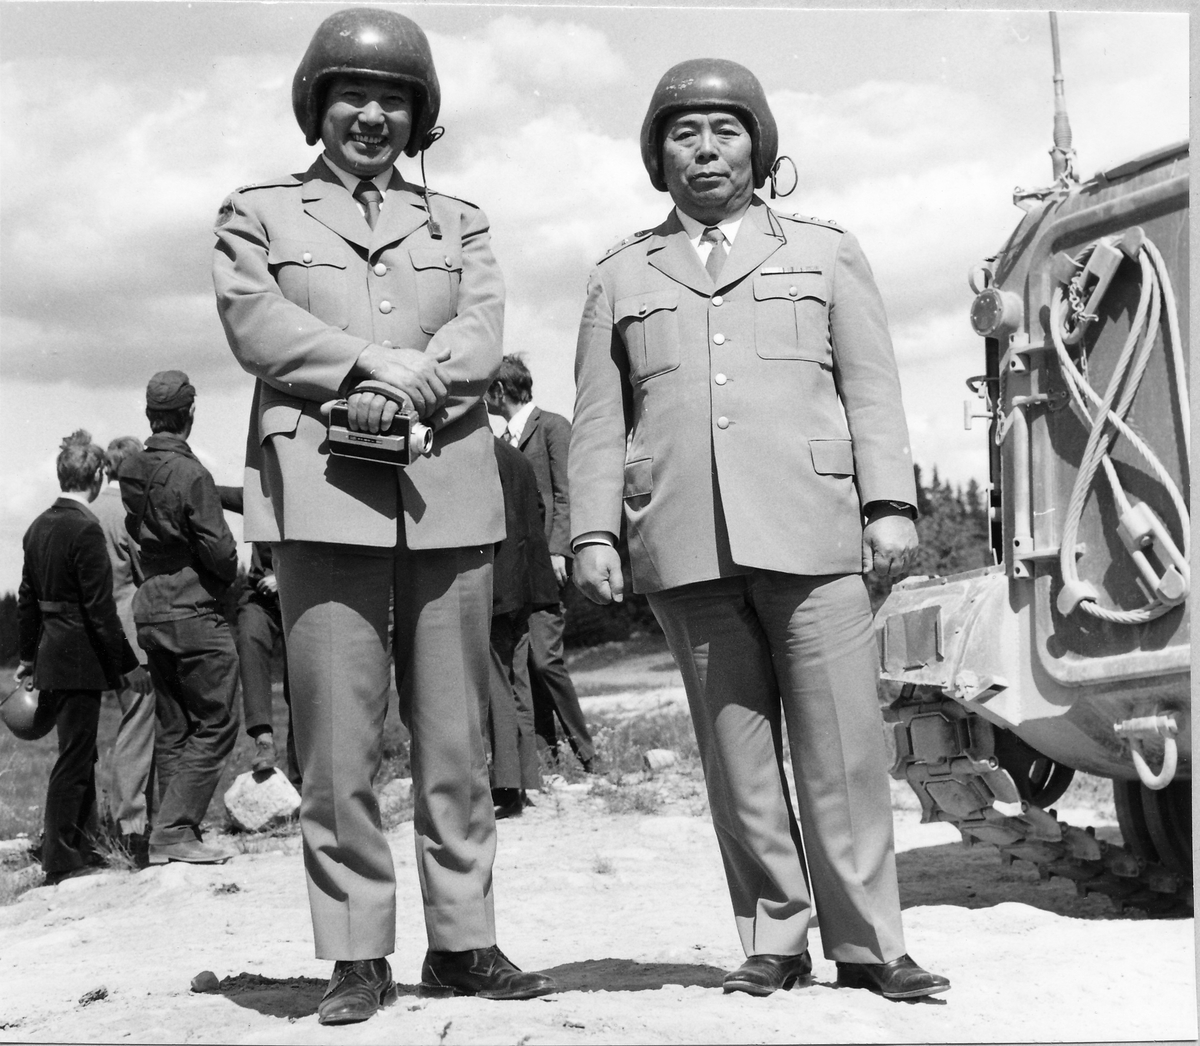 Japanskt studiebesök den 15 juni 1971.
Mj Takamoto och generallöjtnant Ohkawara från Japanese Defence Agency förbereder sig för att åka pansarbandvagn.